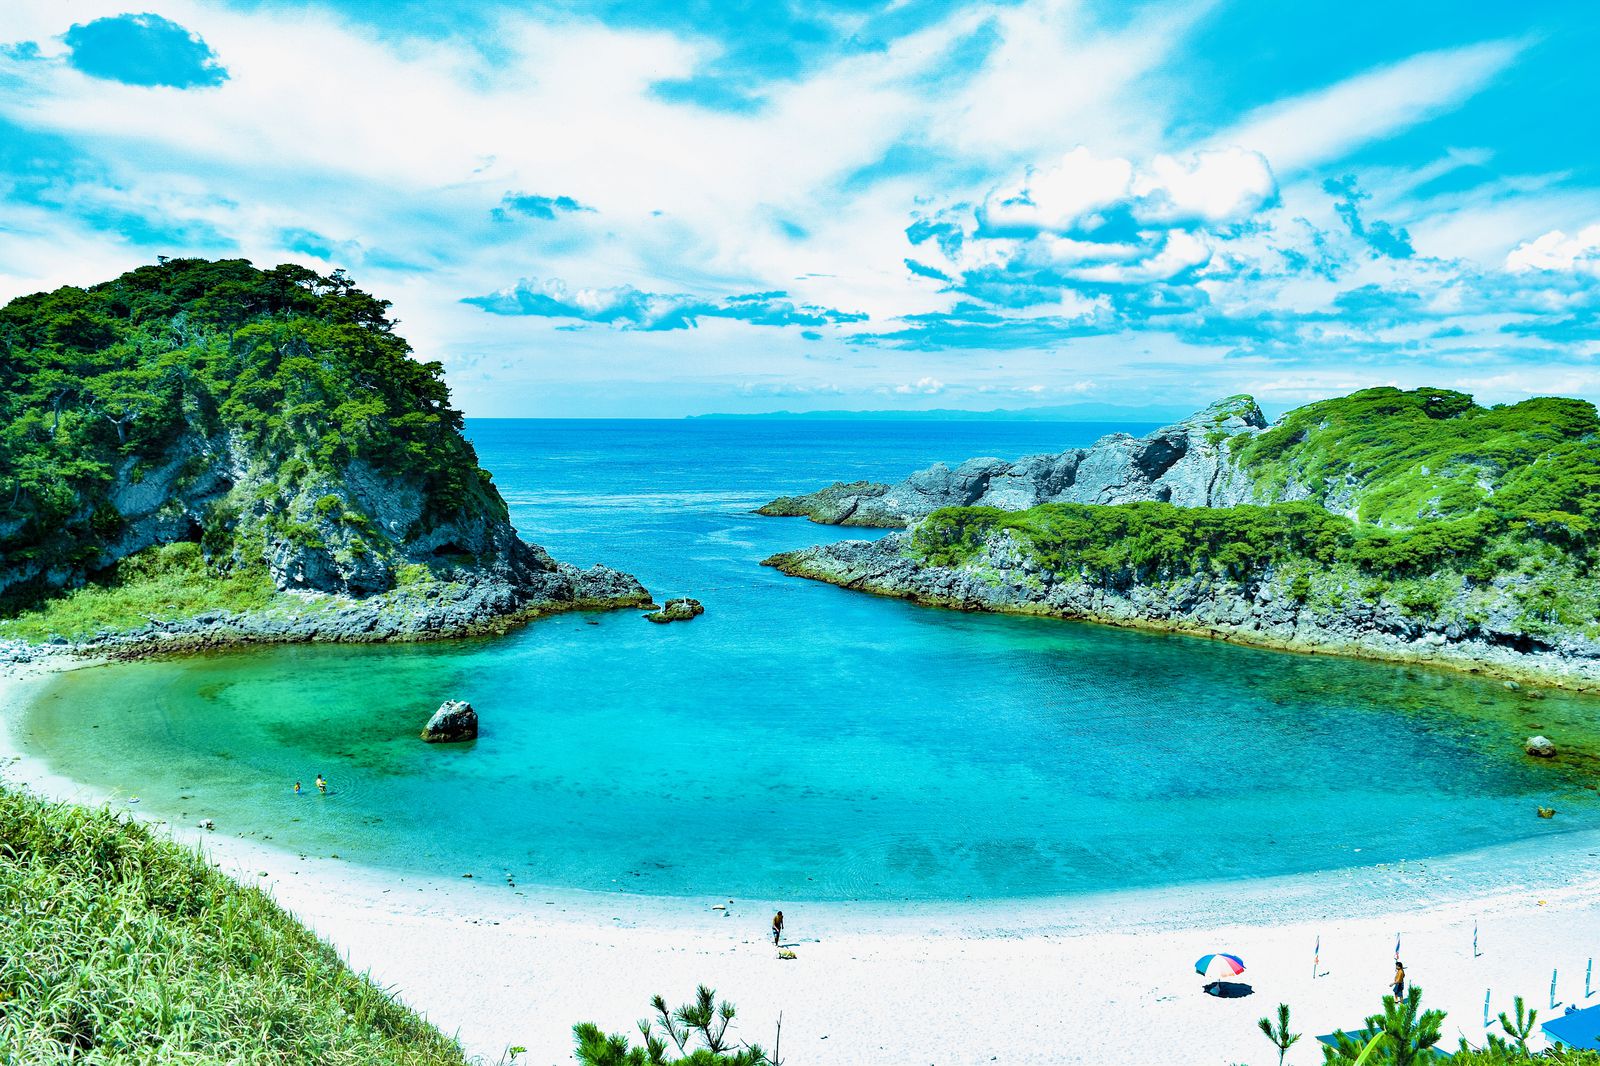 東京 の海で作る夏の思い出 美しき秘境ビーチ 泊海水浴場 に行きたい Retrip リトリップ